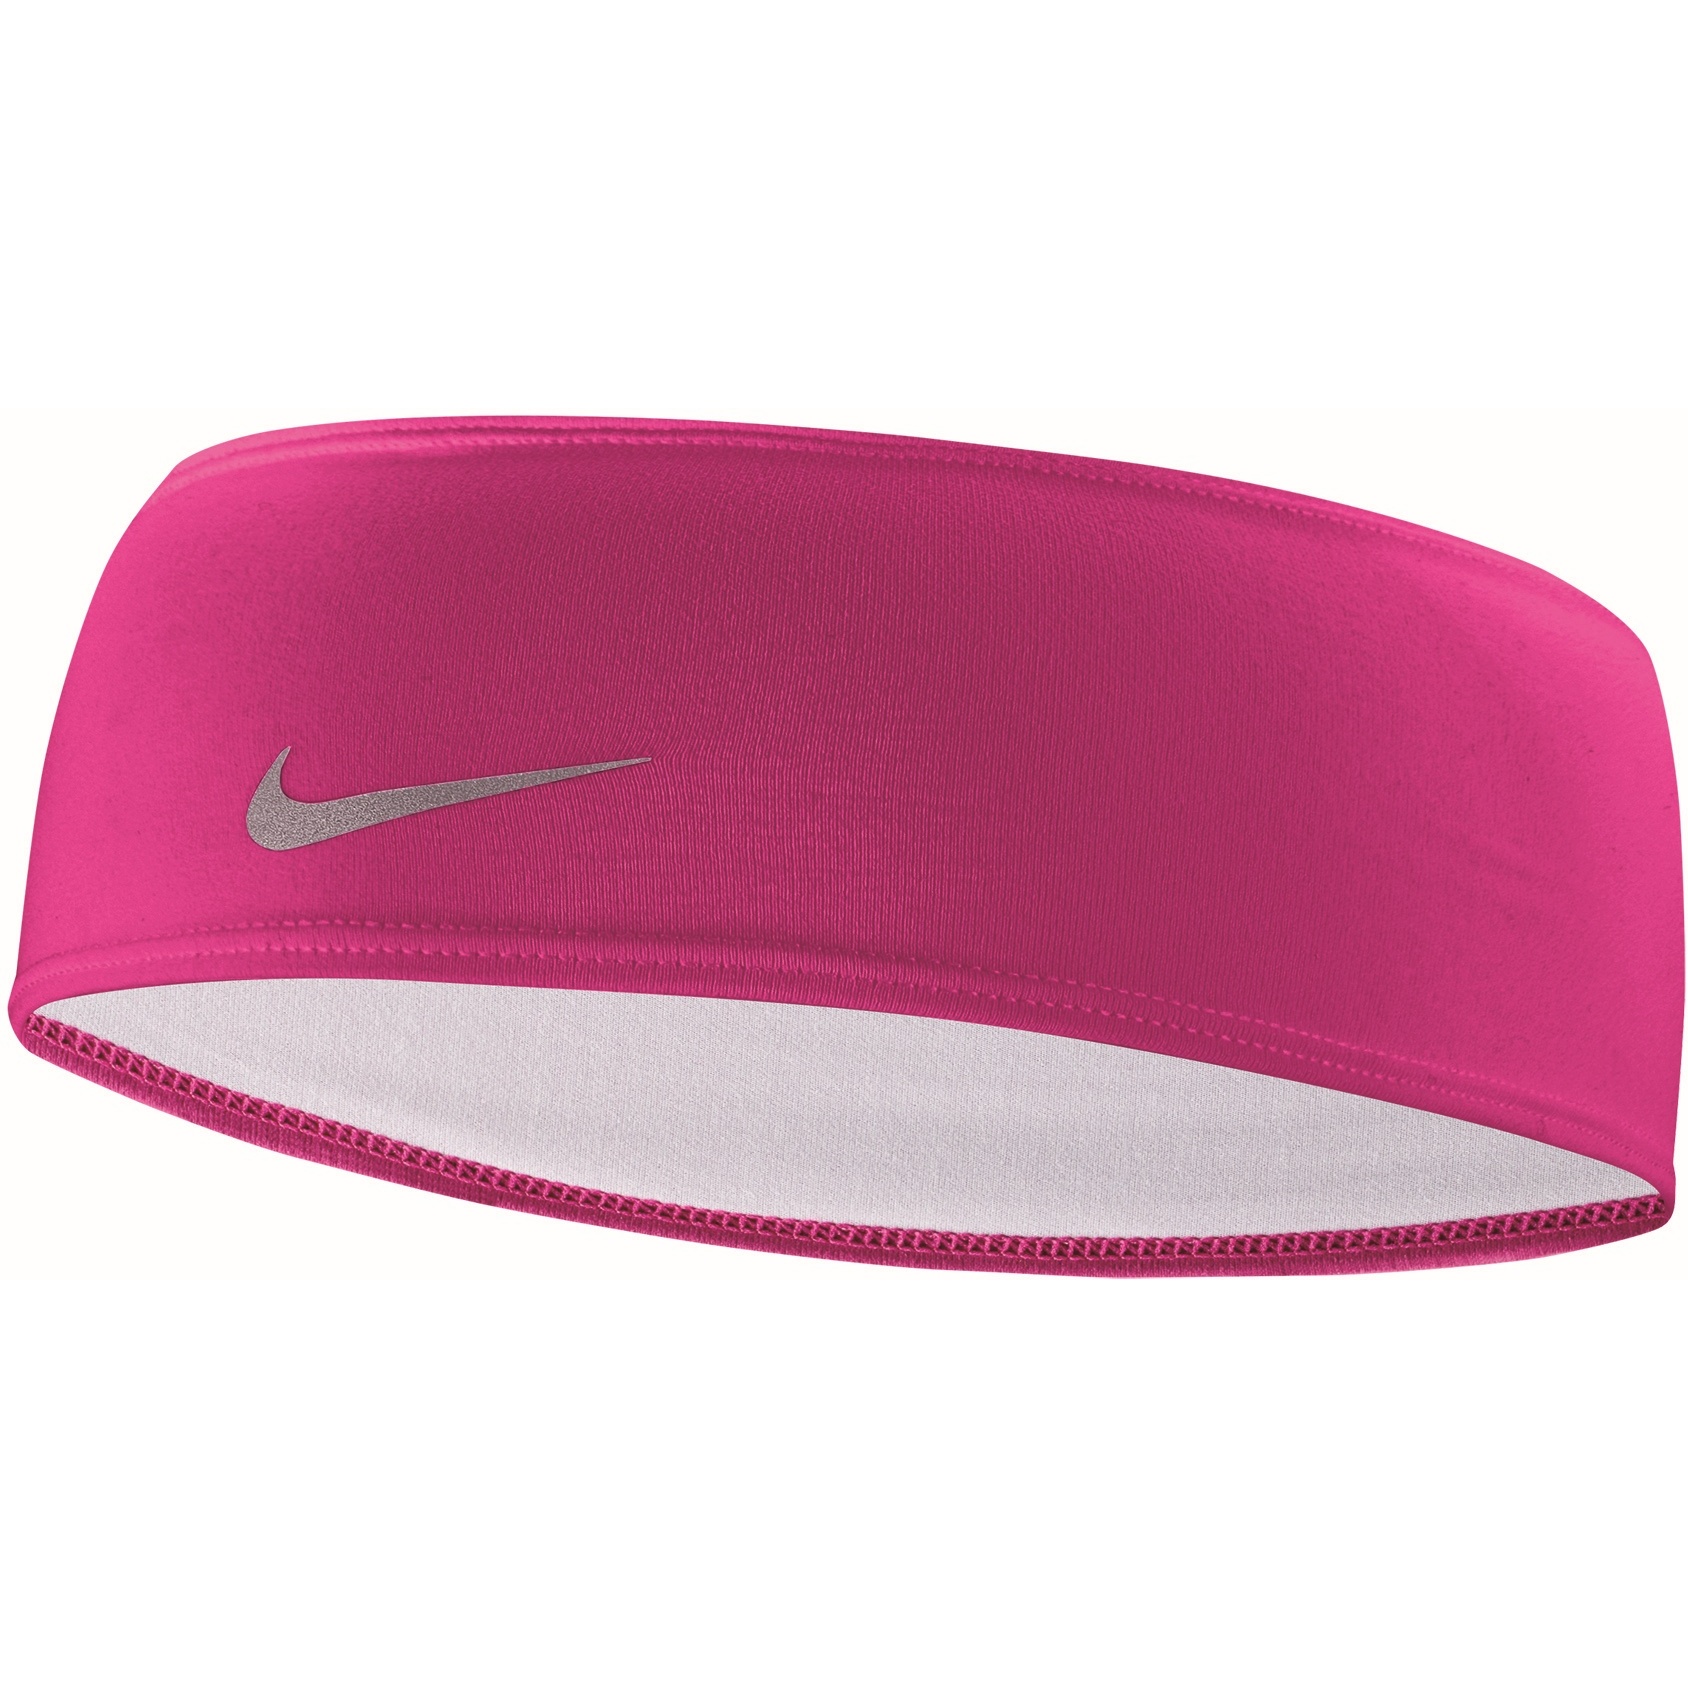 Produktbild von Nike Dri-Fit Swoosh Stirnband 2.0 - active pink/silver